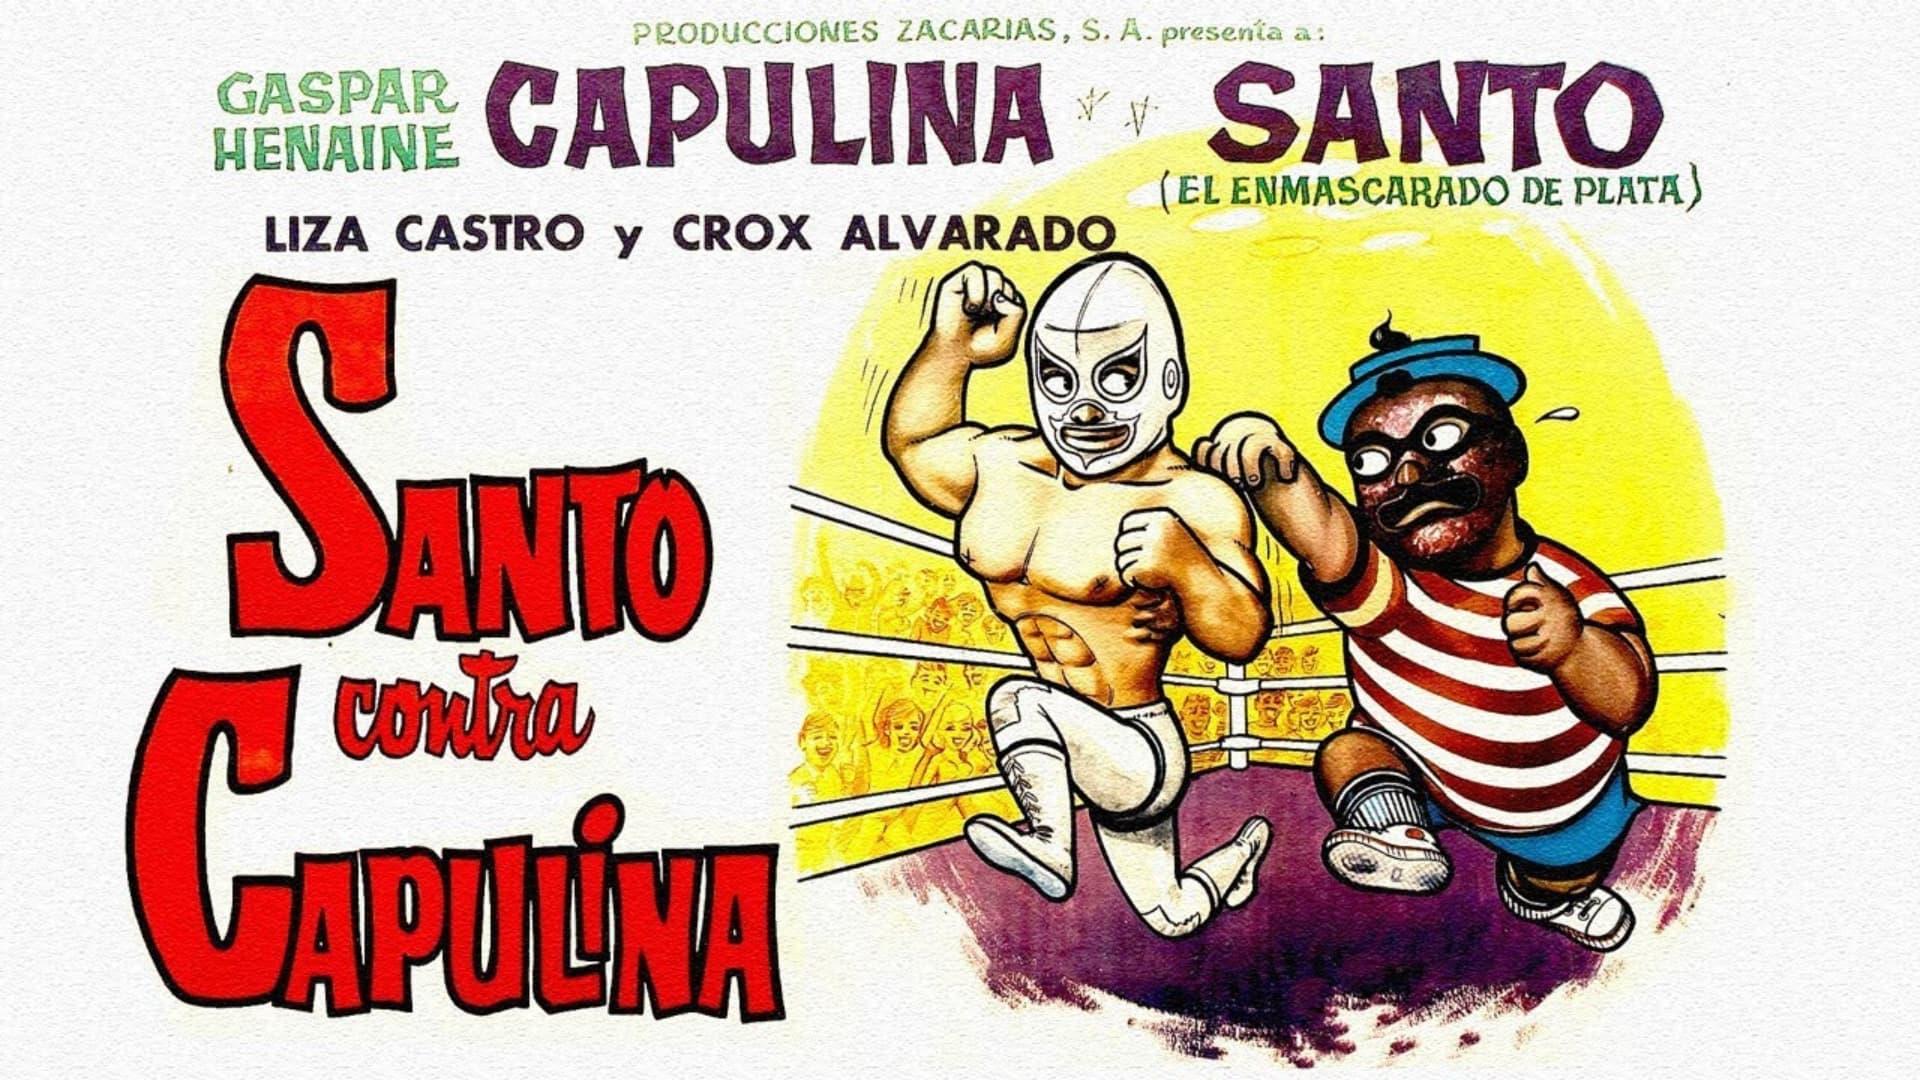 Santo vs. Capulina backdrop